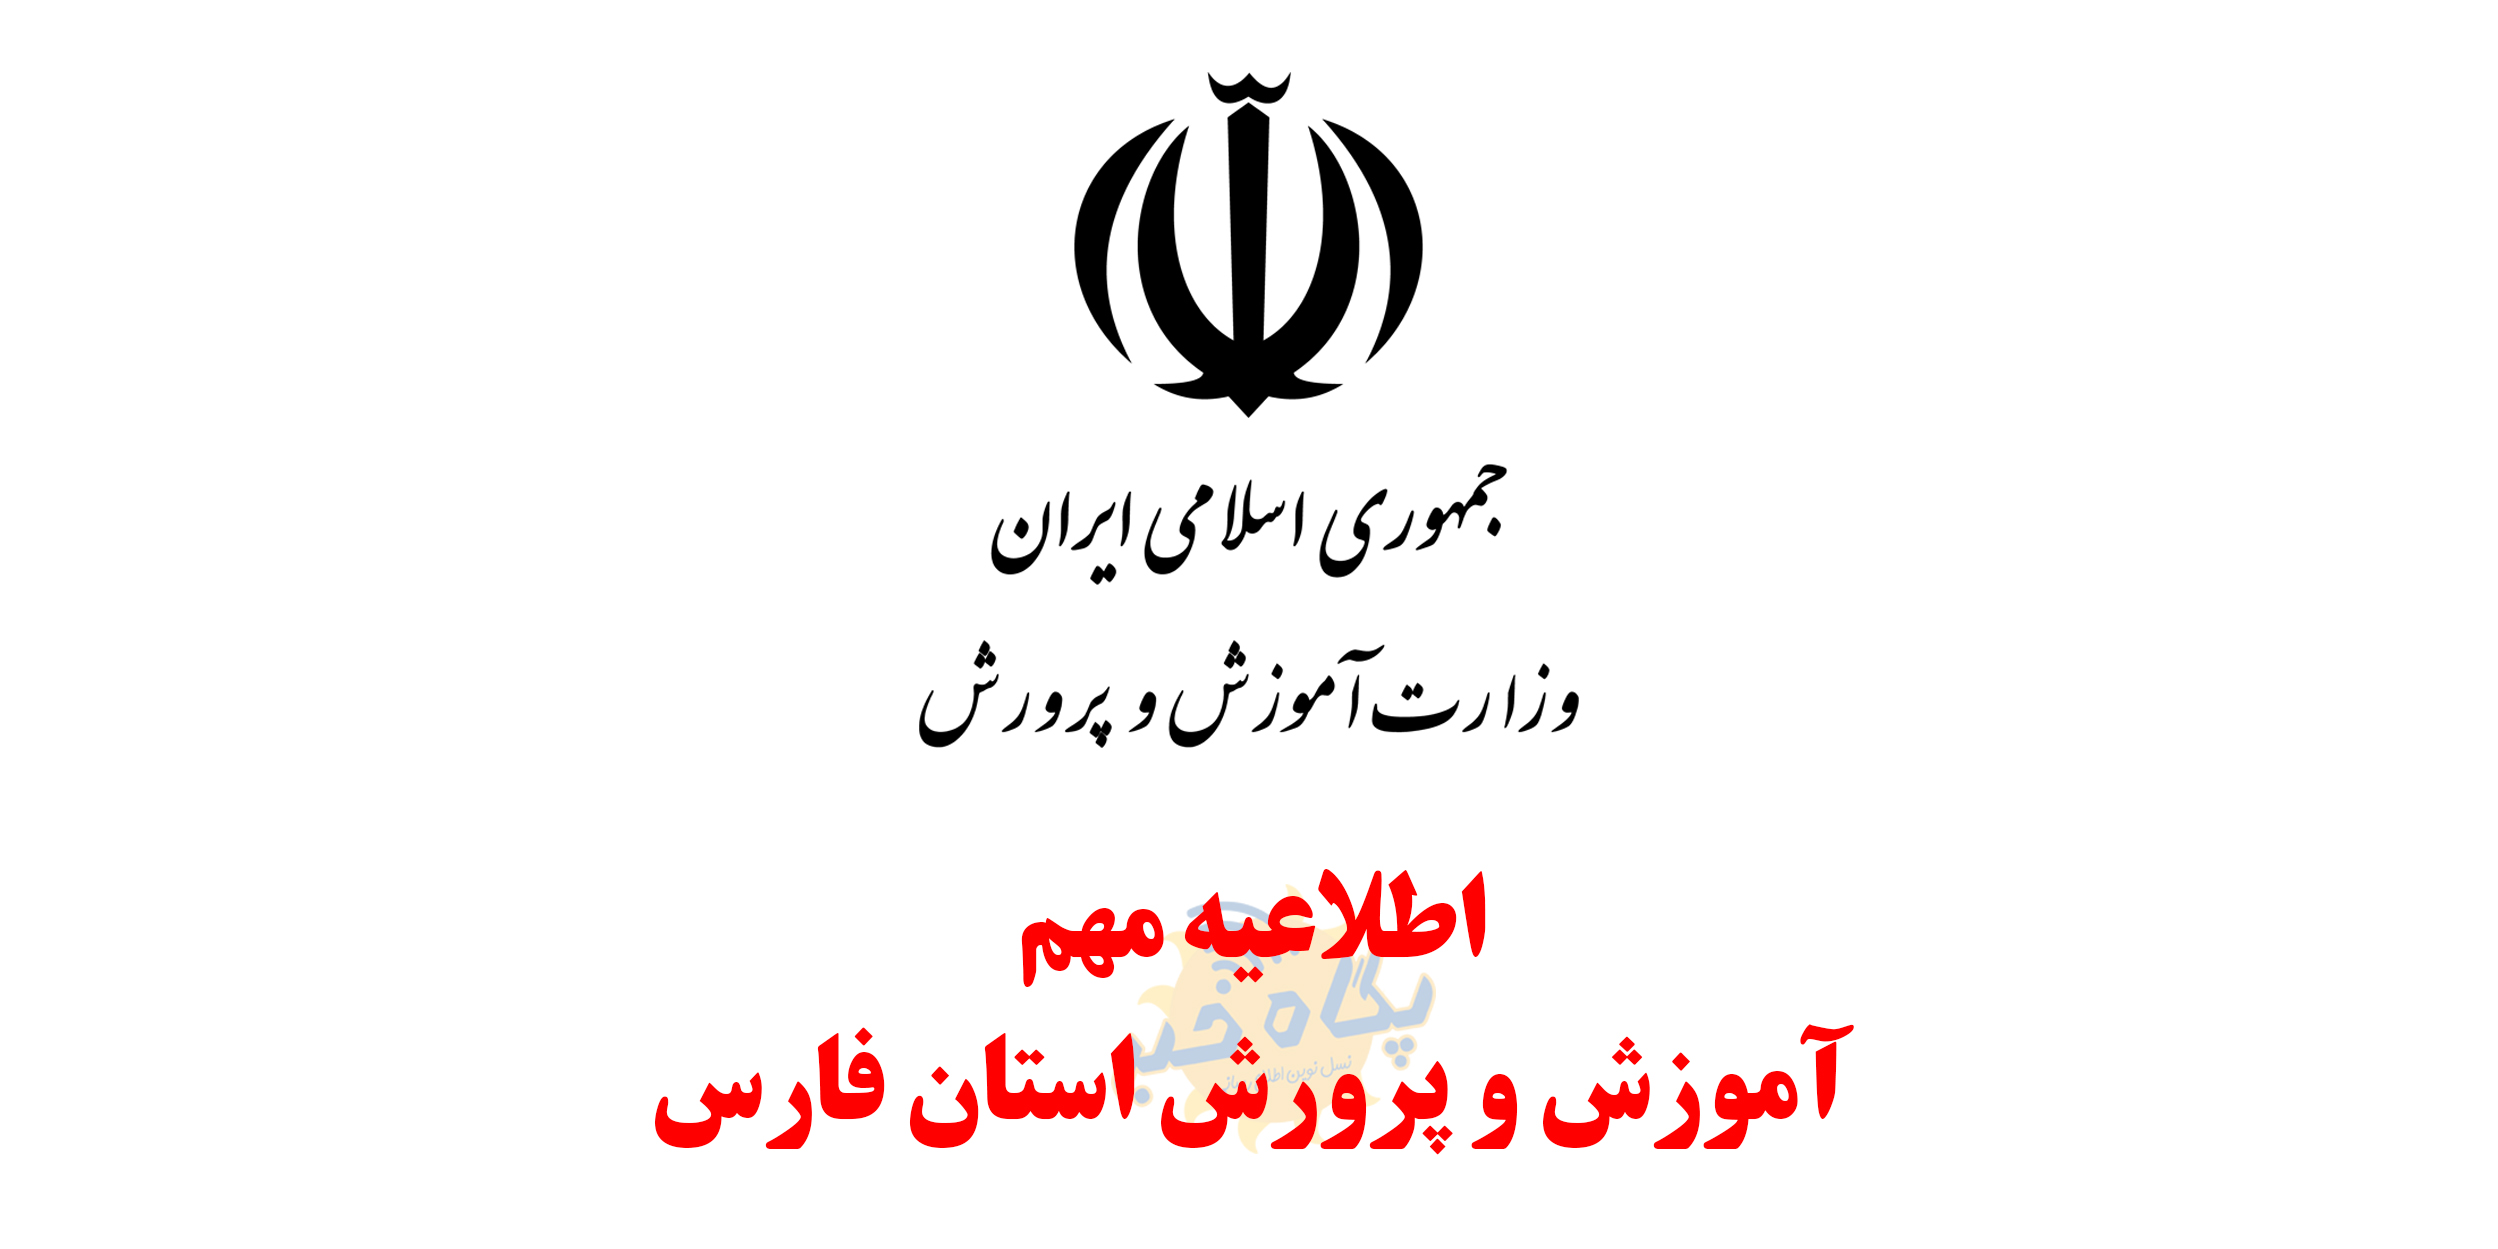 اصلاحیه فوری |لغو تعطیلی نوبت عصر مدارس شیراز در روز سه شنبه ۱۷ دیماه